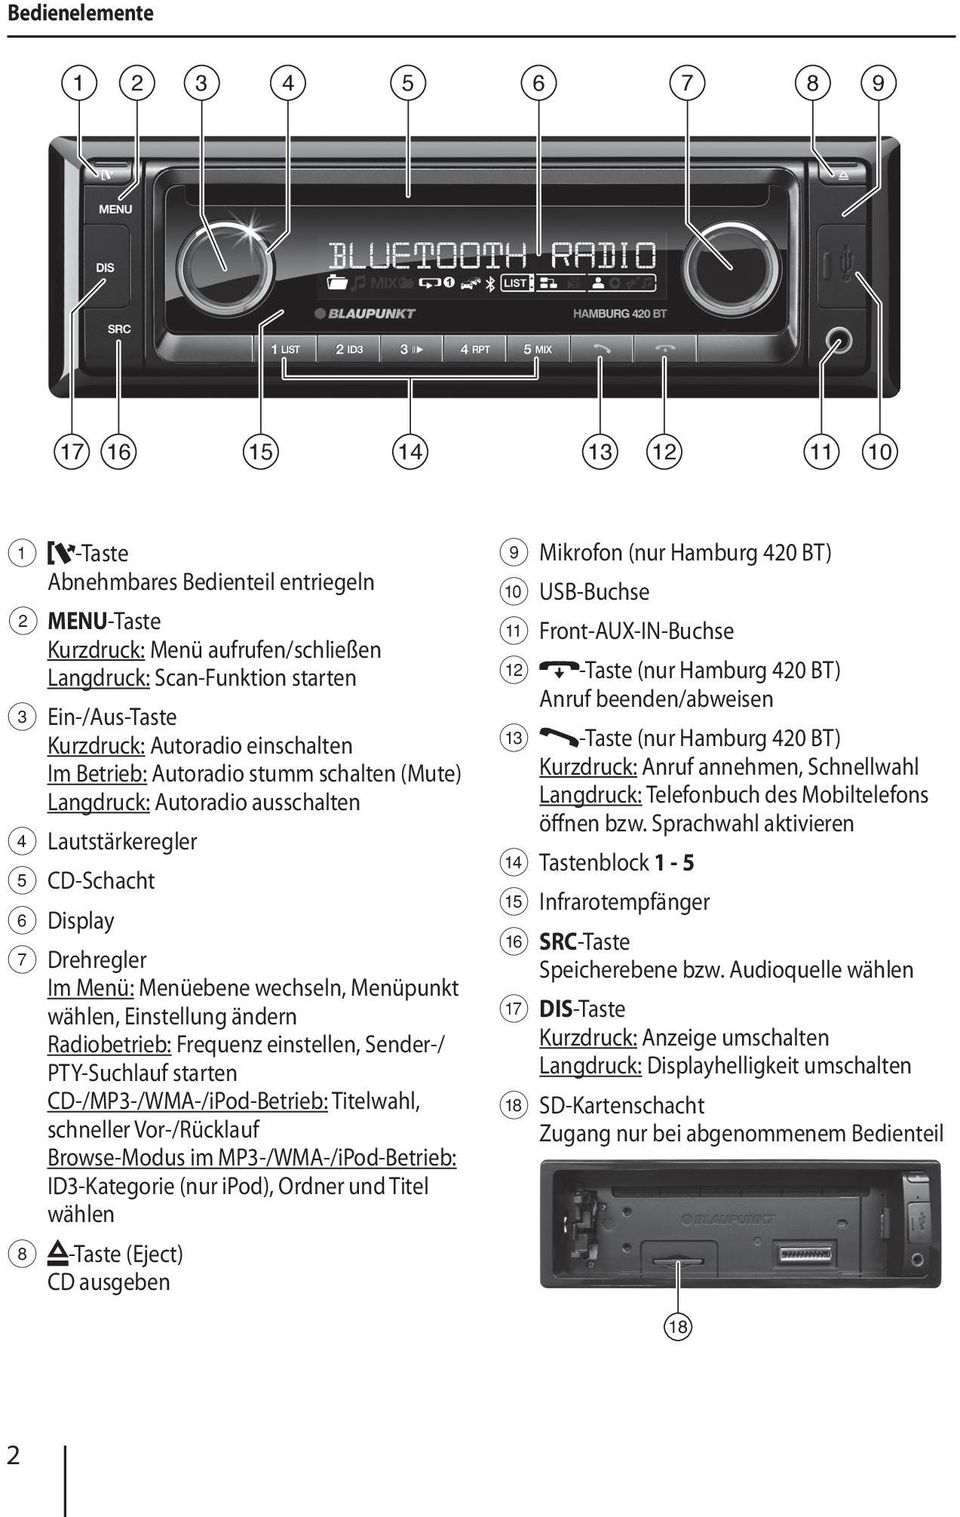 Menüpunkt wählen, Einstellung ändern Radiobetrieb: Frequenz einstellen, Sender-/ PTY-Suchlauf starten CD-/MP3-/WMA-/iPod-Betrieb: Titelwahl, schneller Vor-/Rücklauf Browse-Modus im